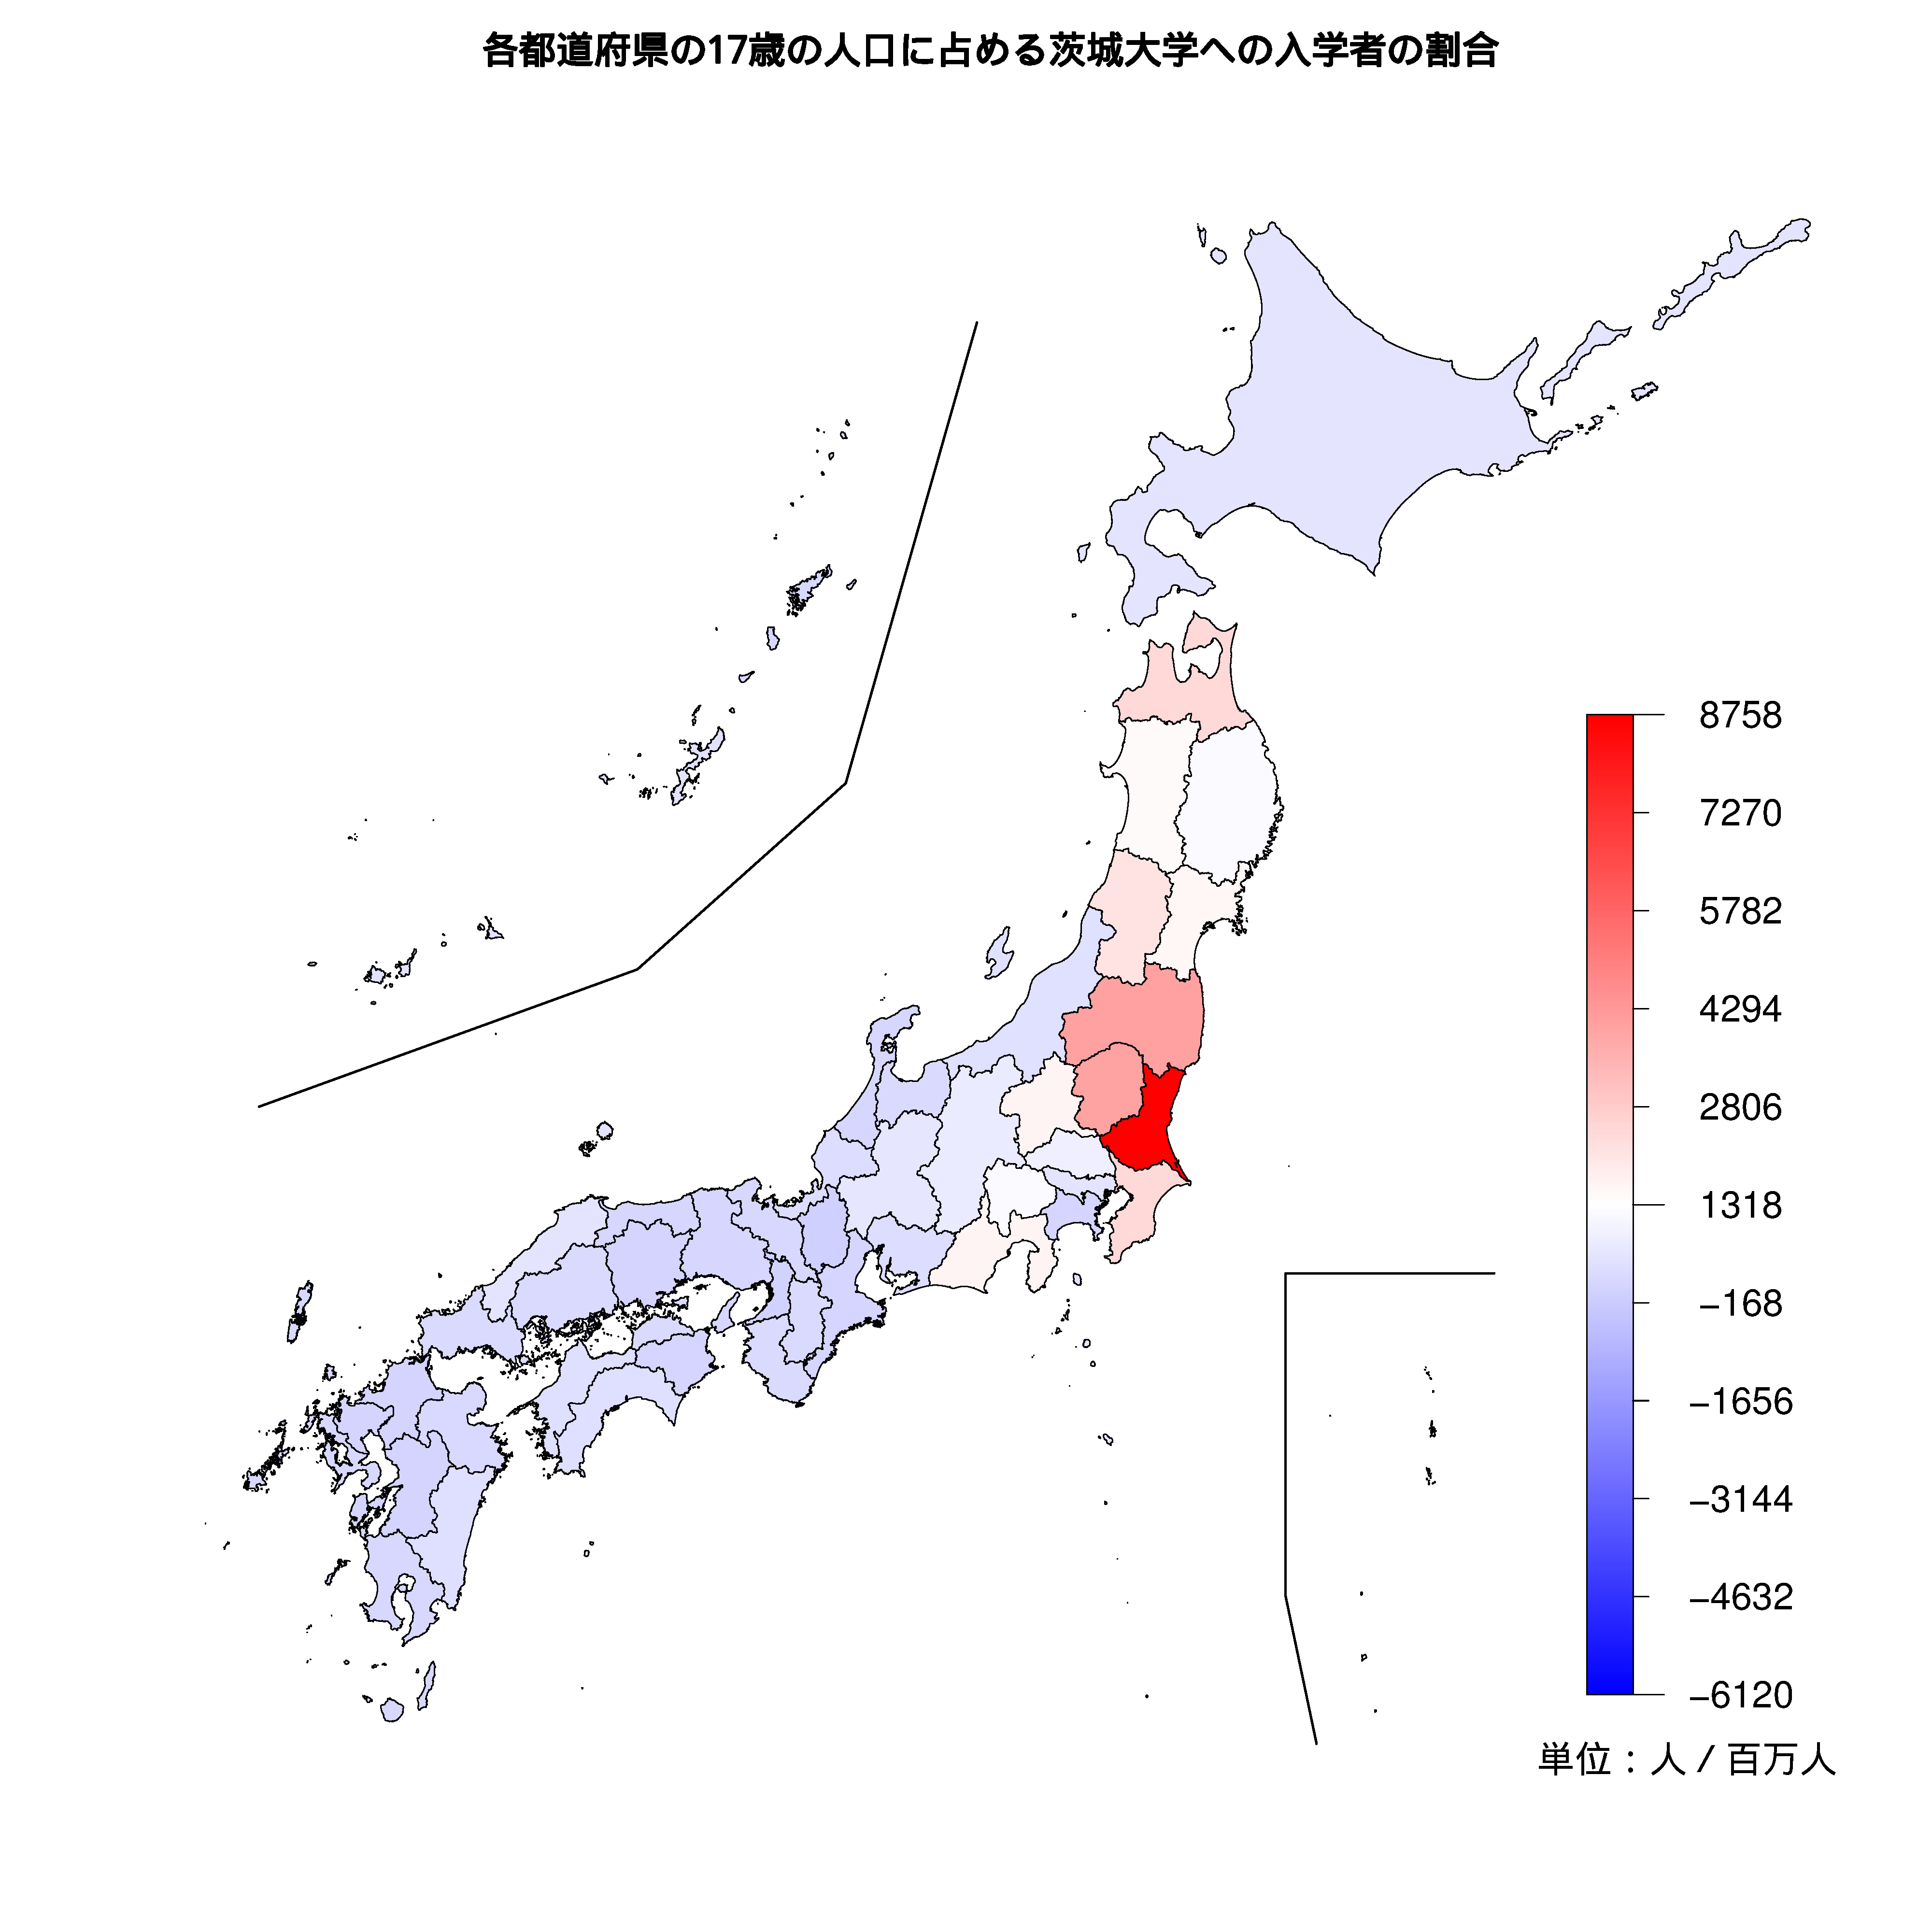 茨城大学への入学者が多い都道府県の色分け地図